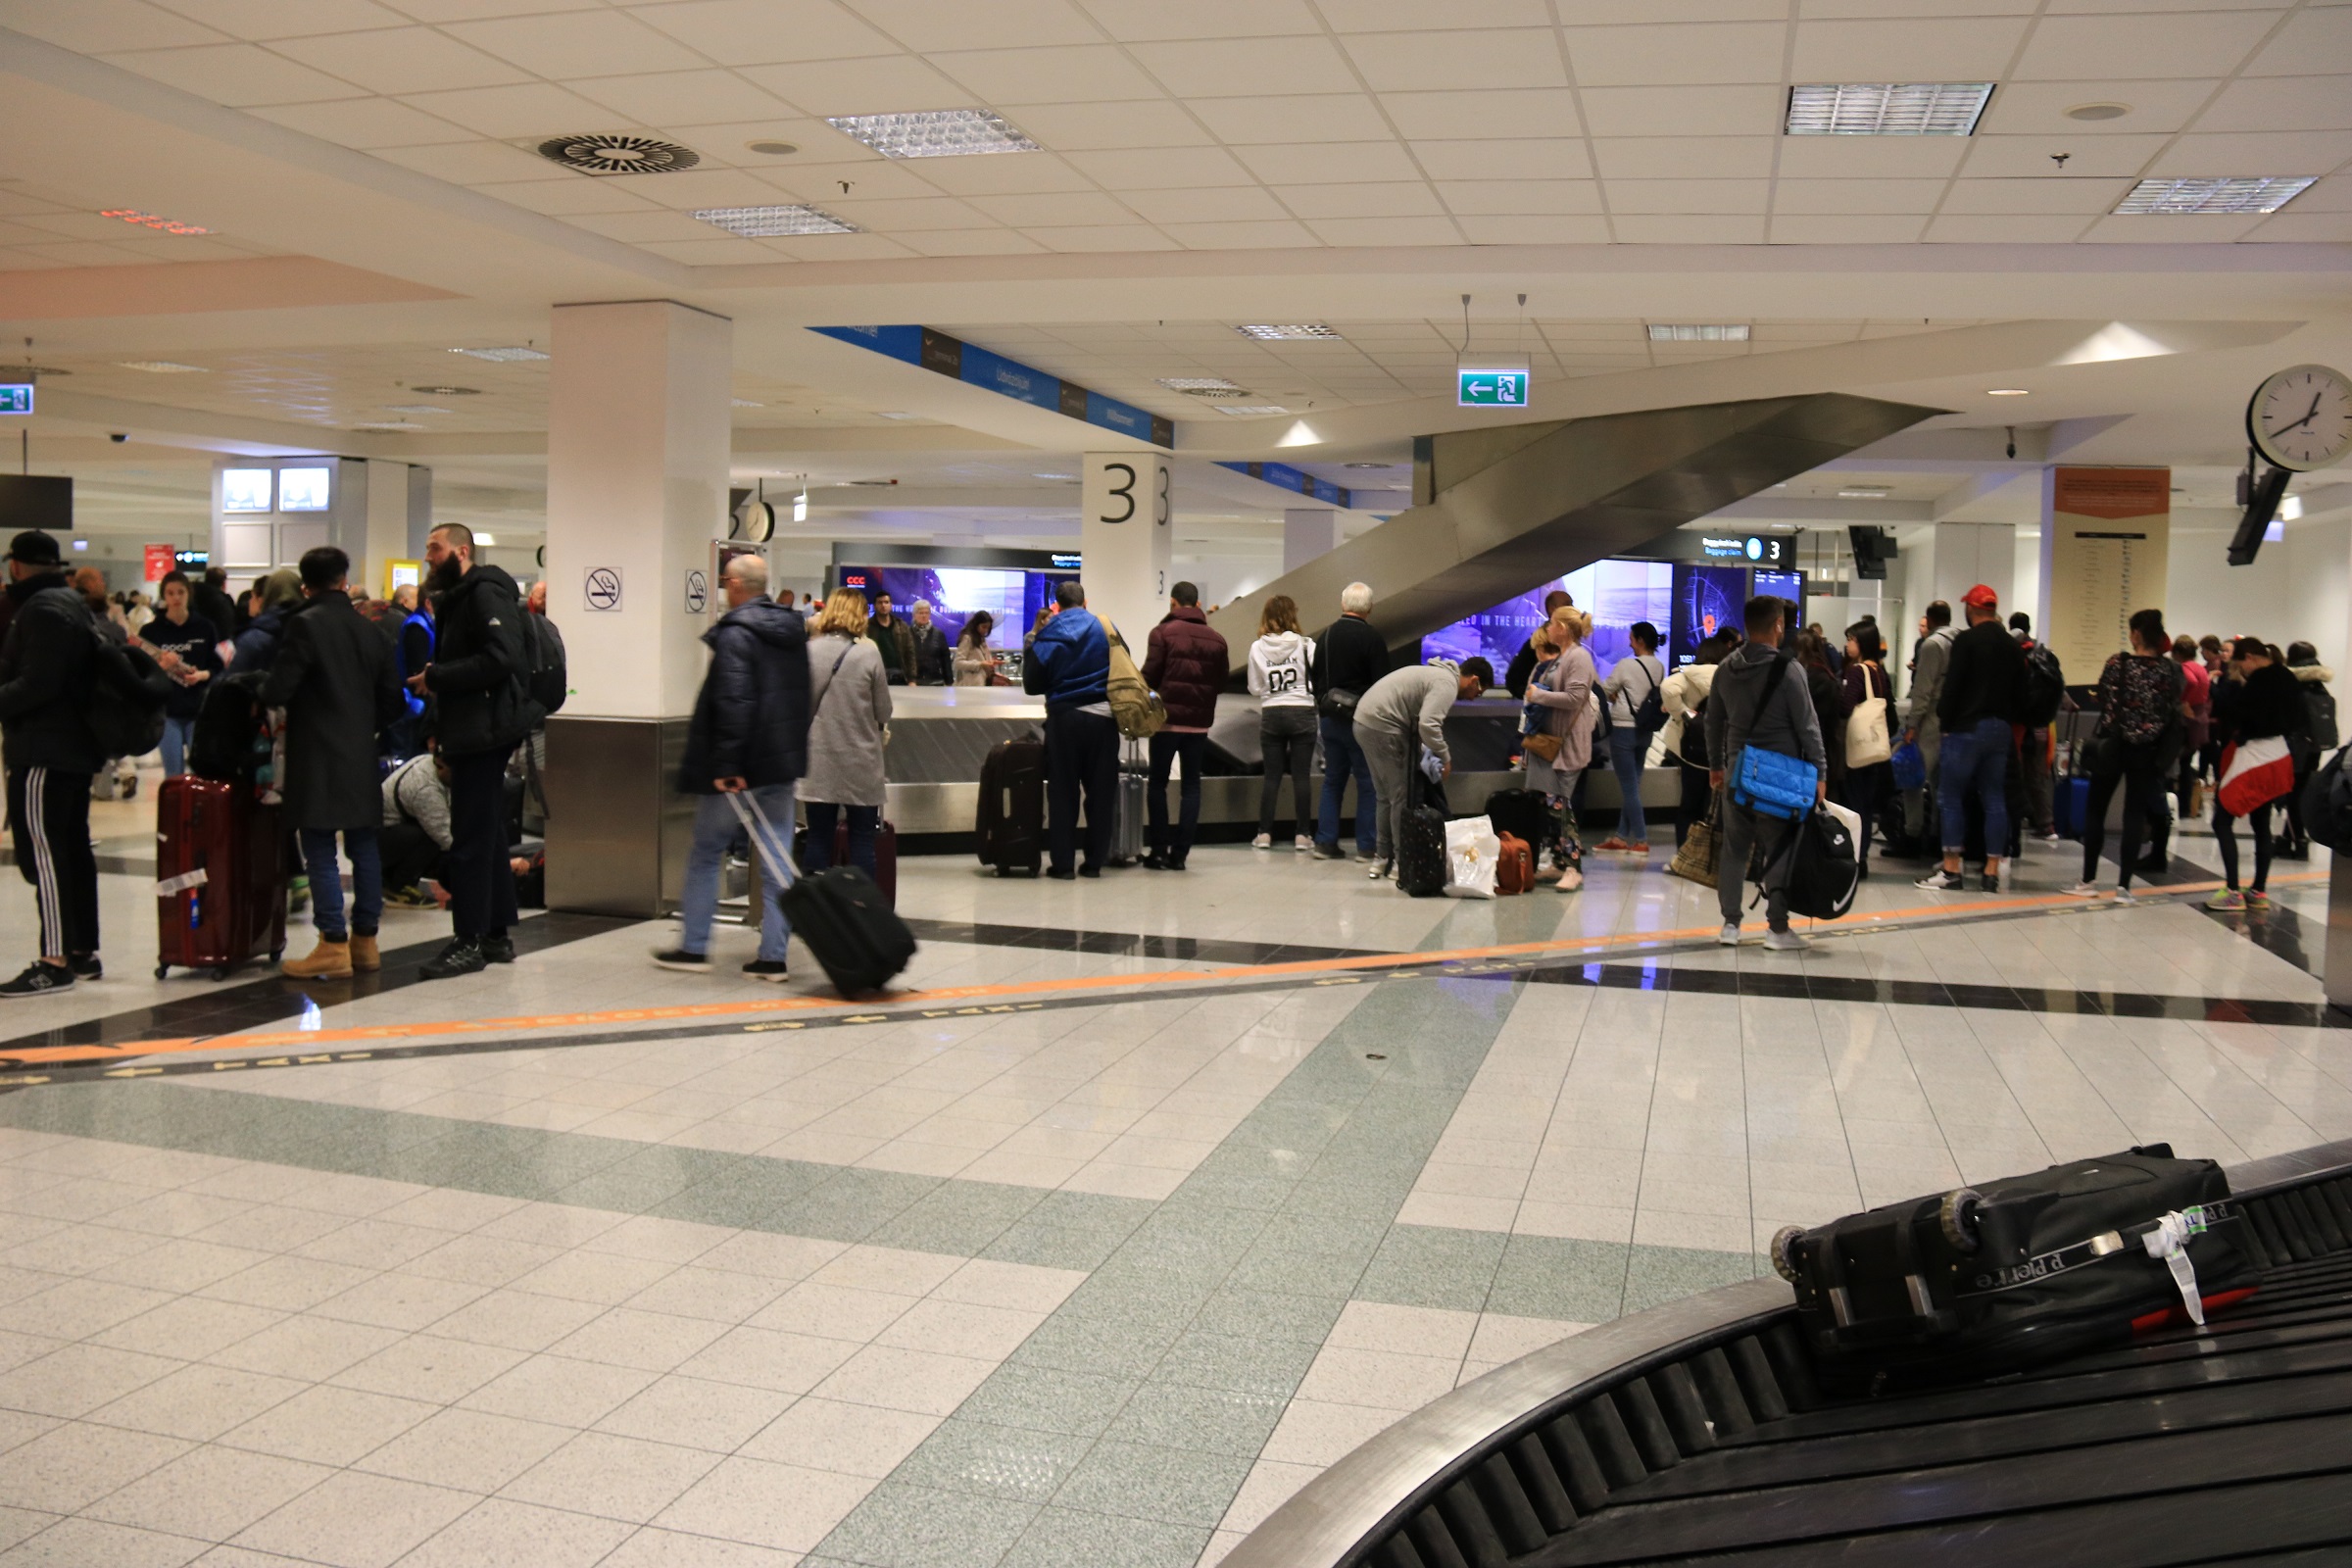 bud:plus fejlesztéseket jelentett be a Budapest Airport